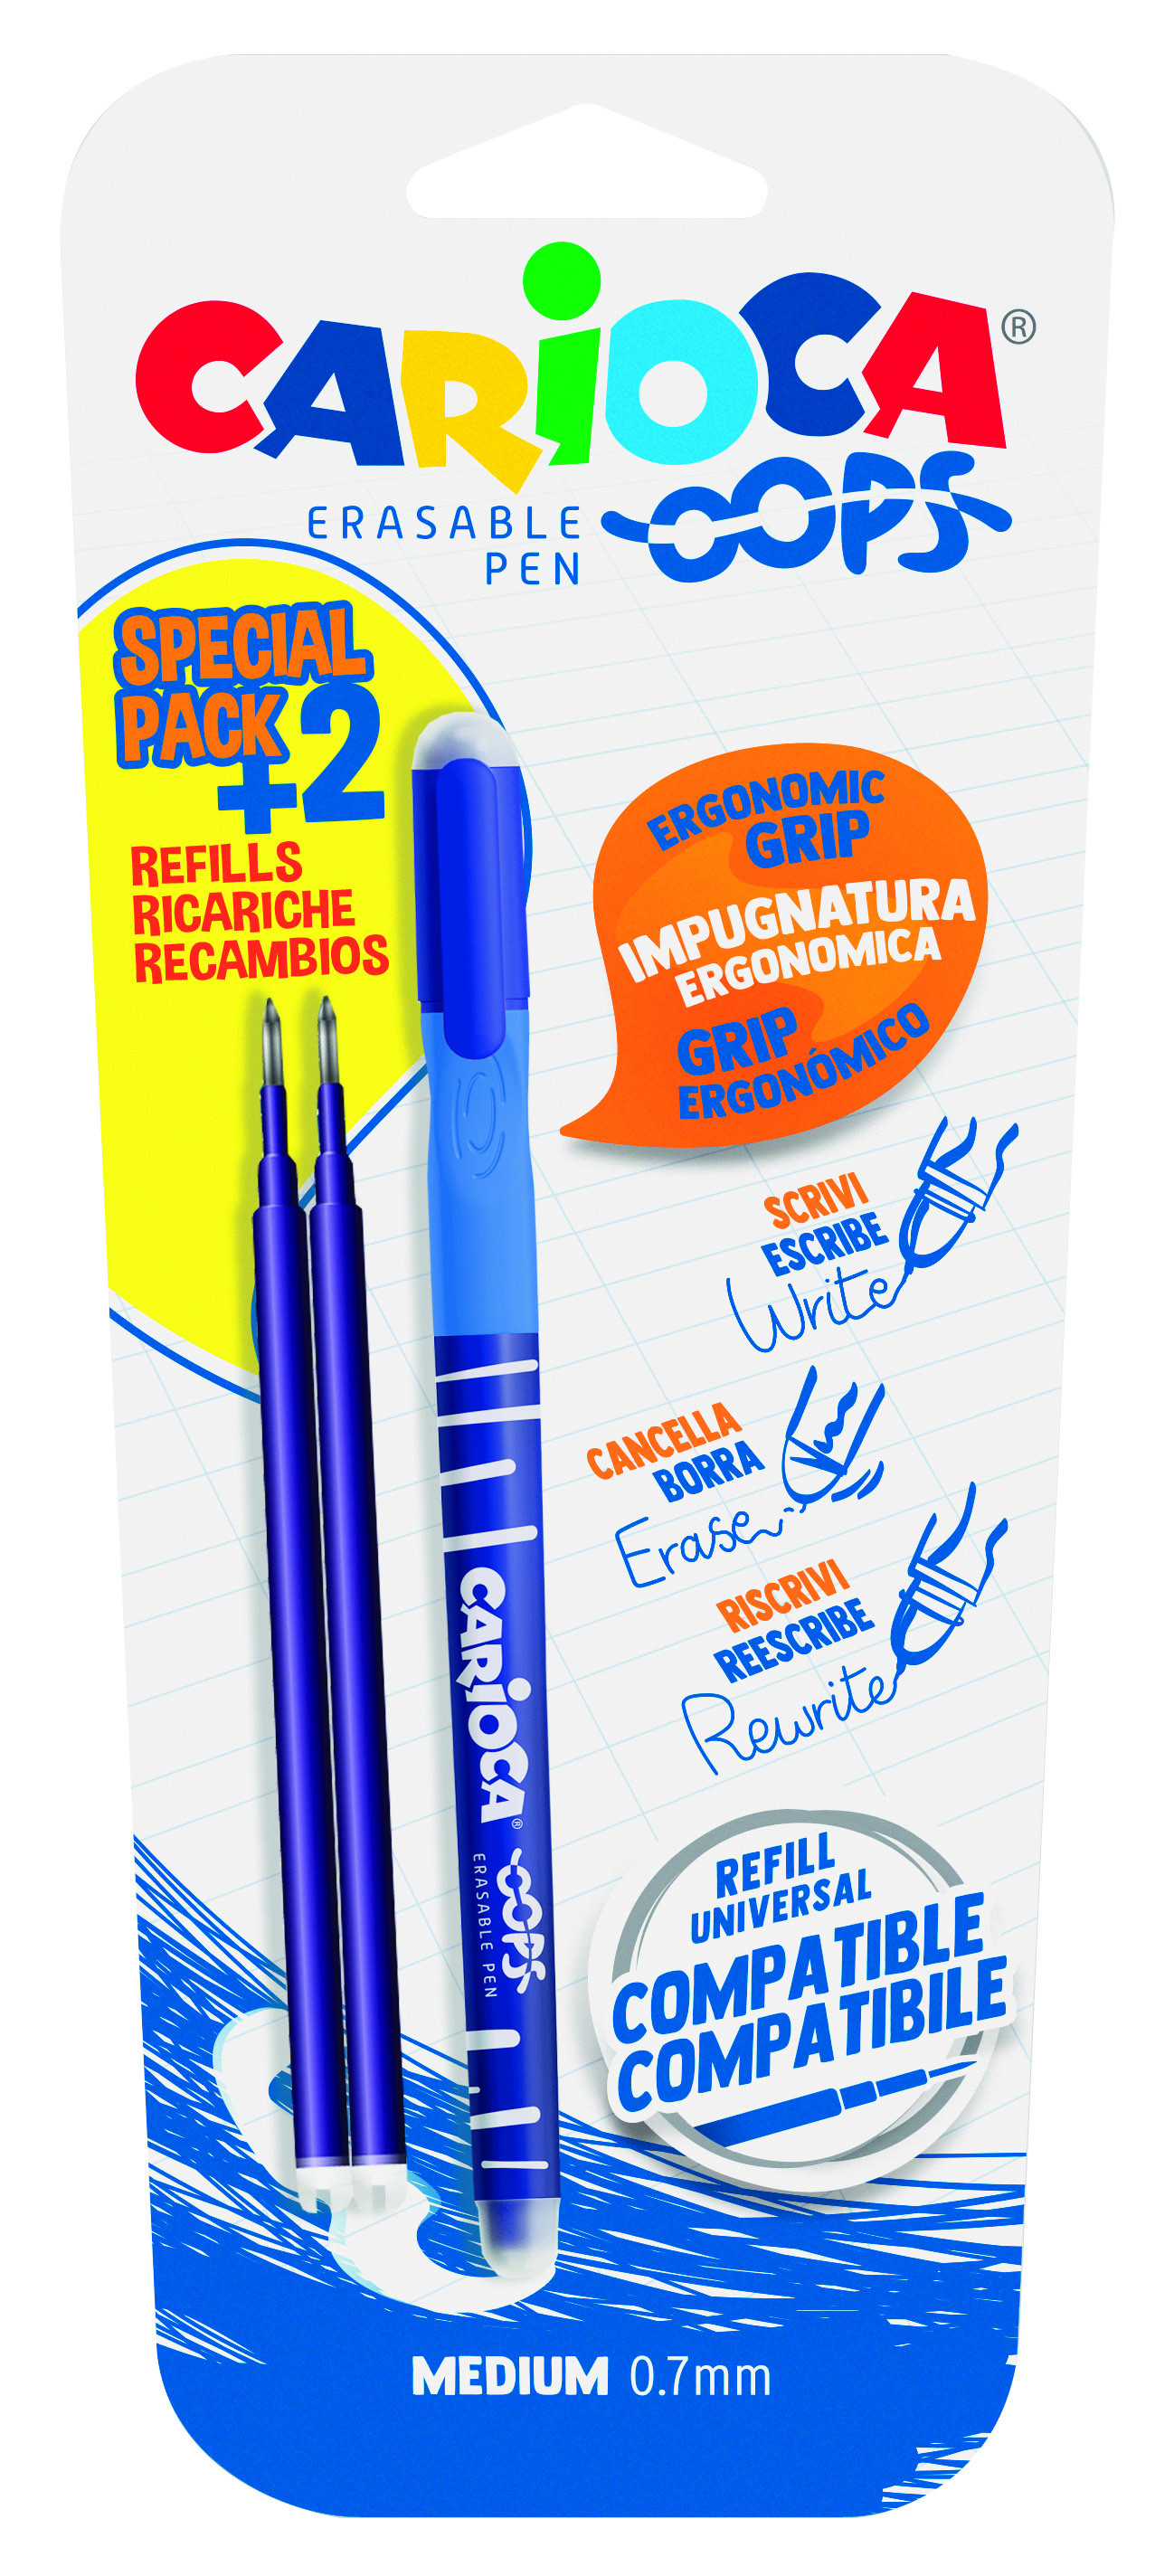 Blister 2 penne cancellabili colore blu Replay: Penne cancellabili di  Papermate